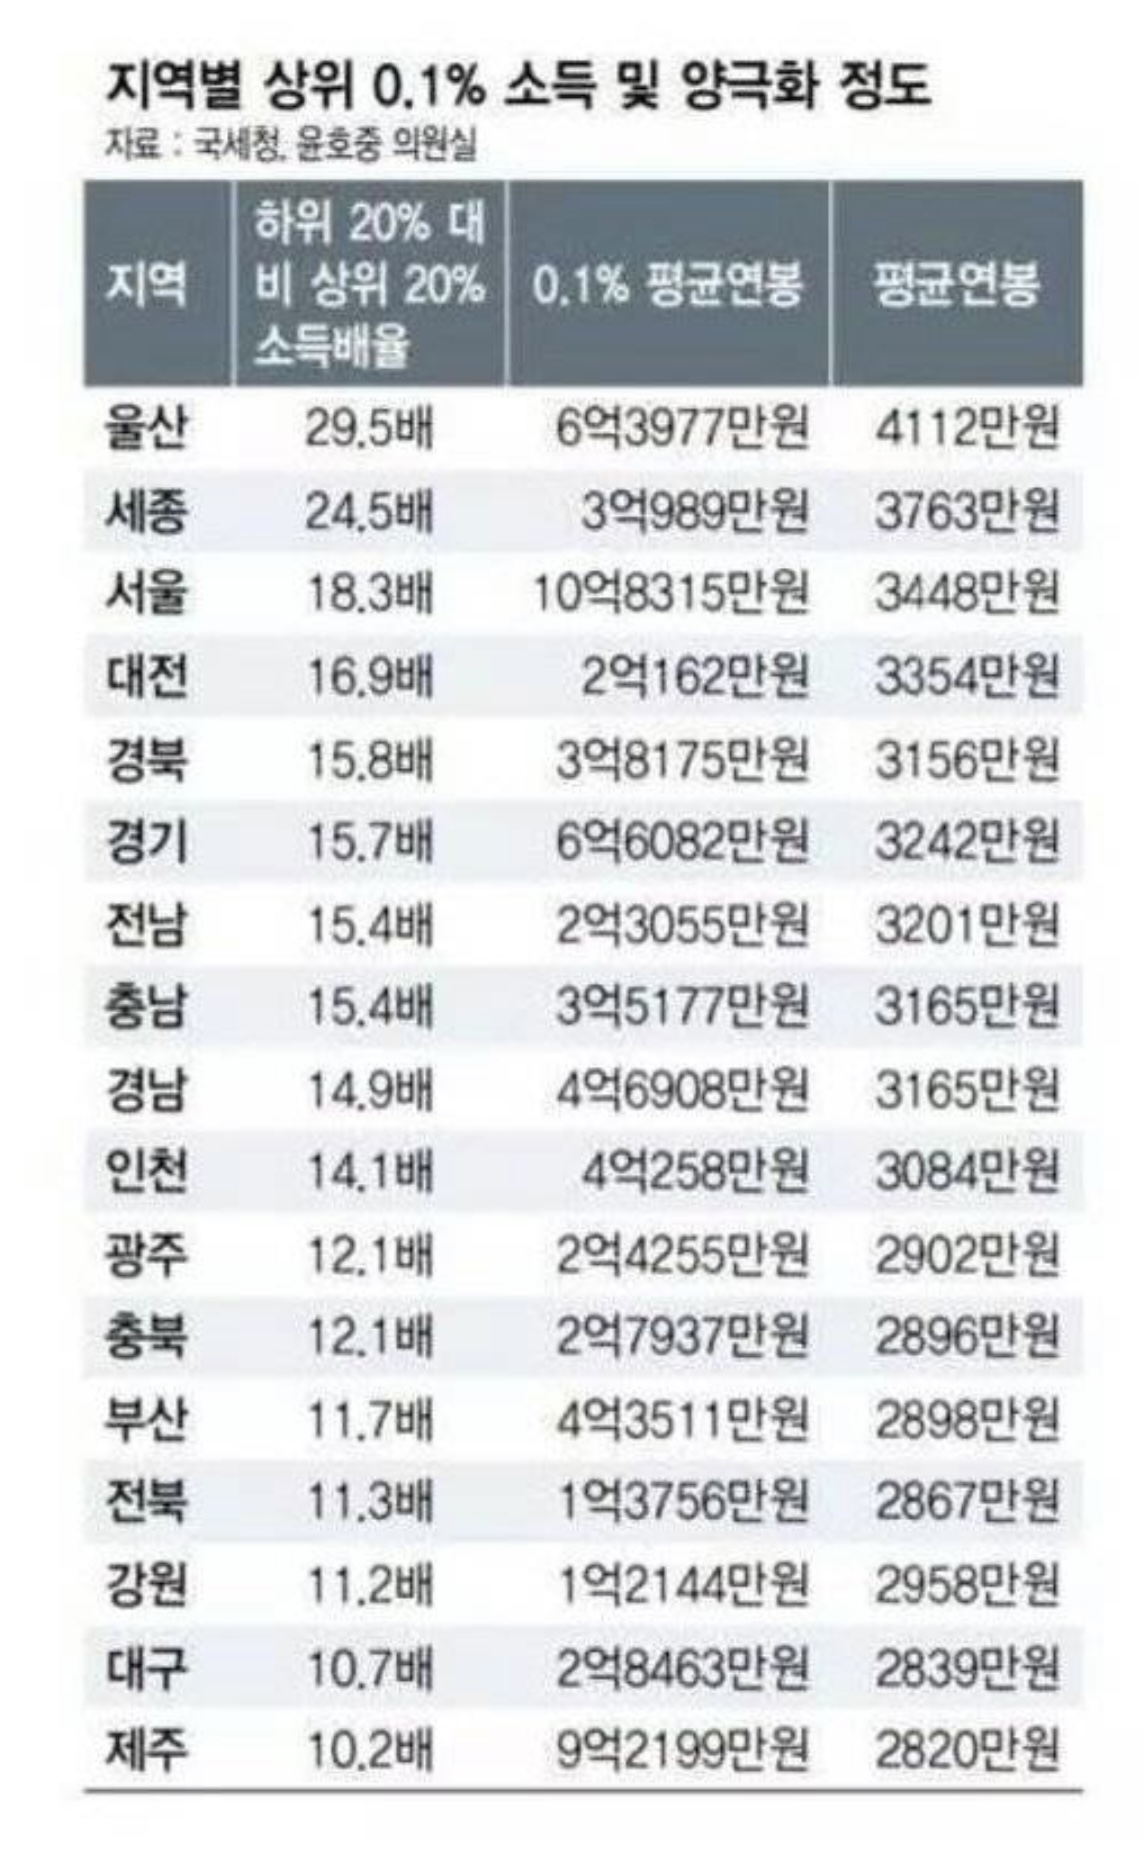 한국 지역별 평균 연봉